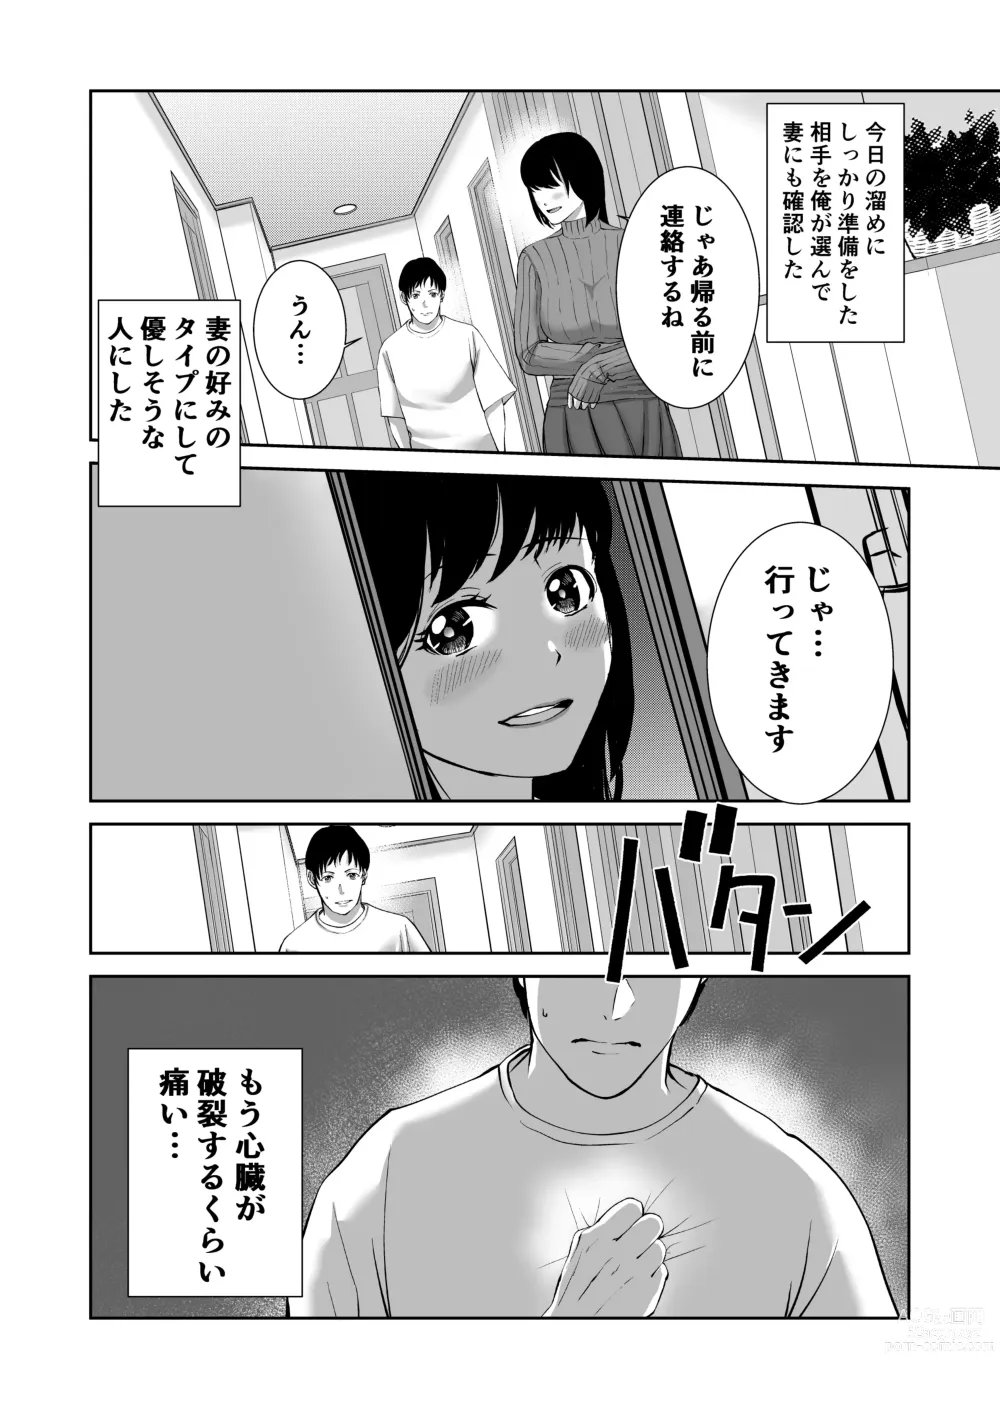 Page 4 of doujinshi Anata no Tame Dakara